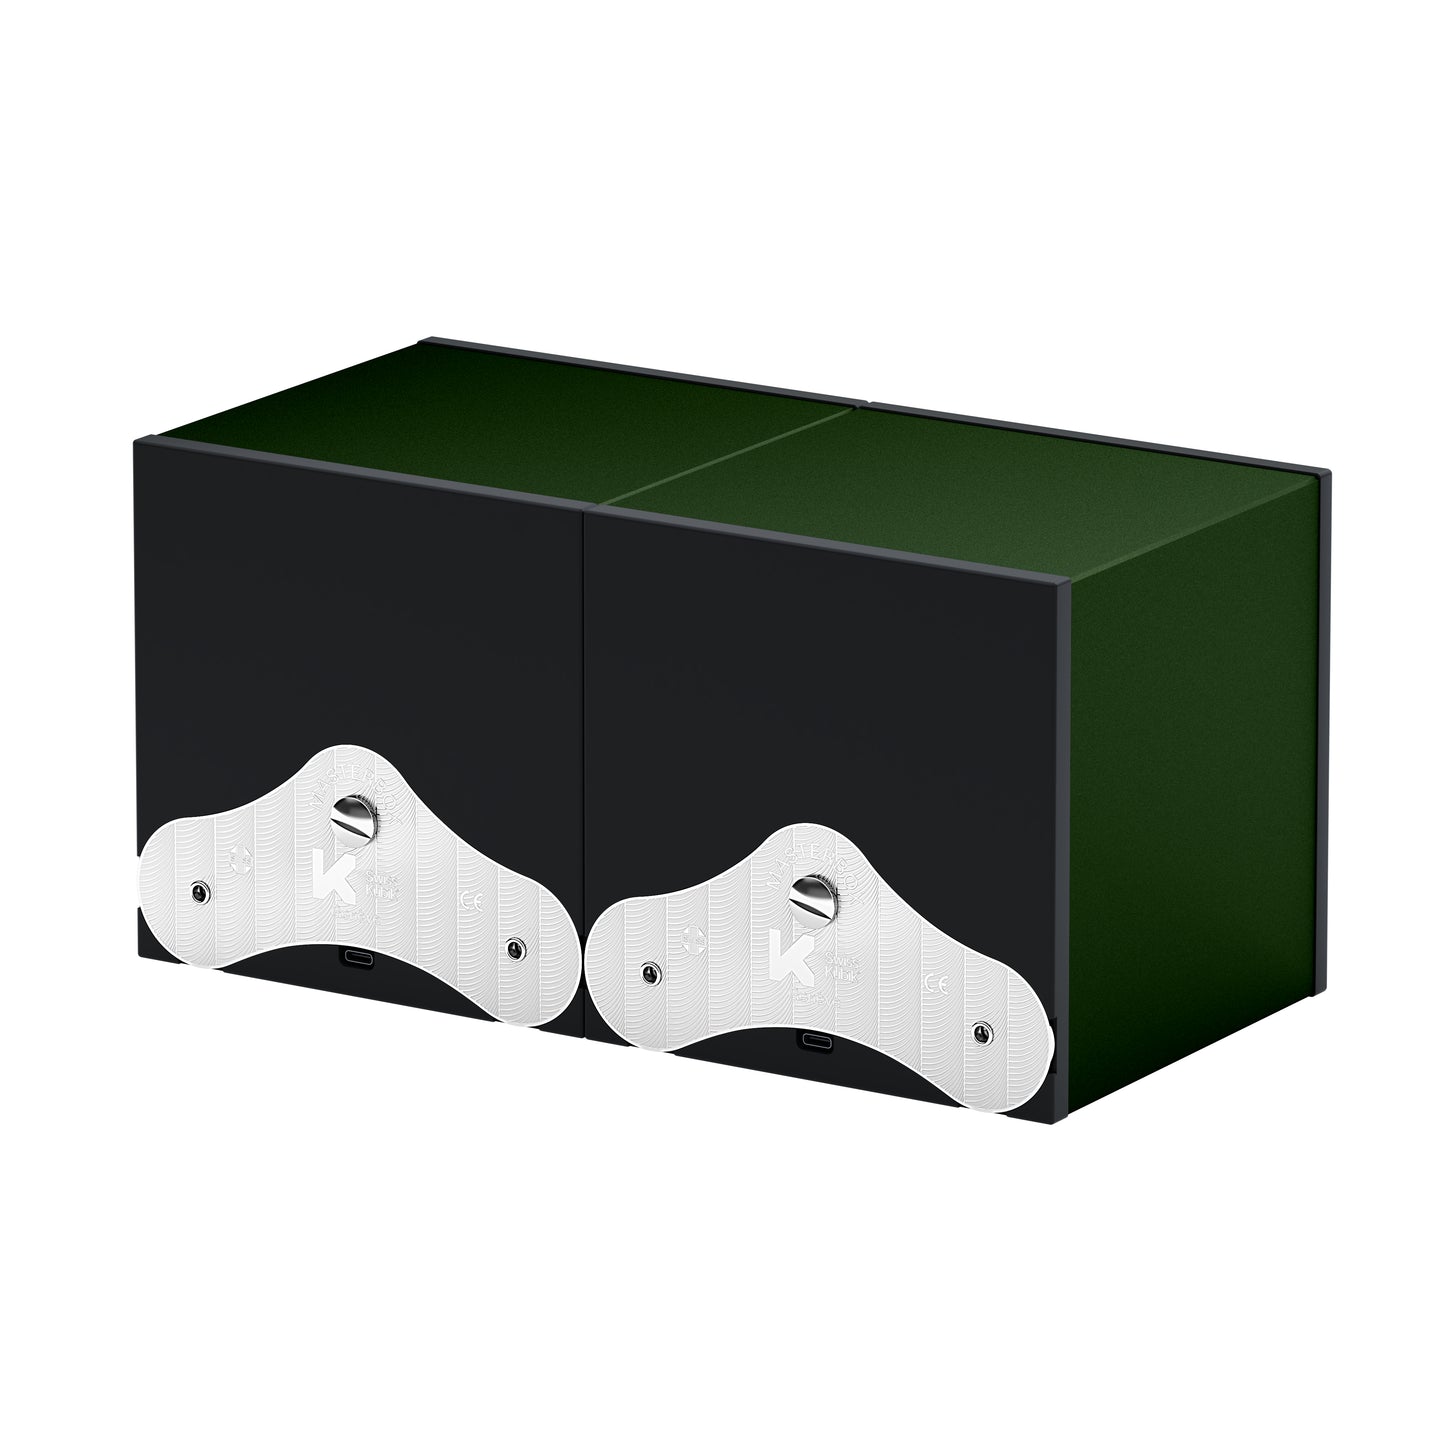 SwissKubik : remontoir montre automatique Masterbox Aluminium Vert Foncé 2 montres